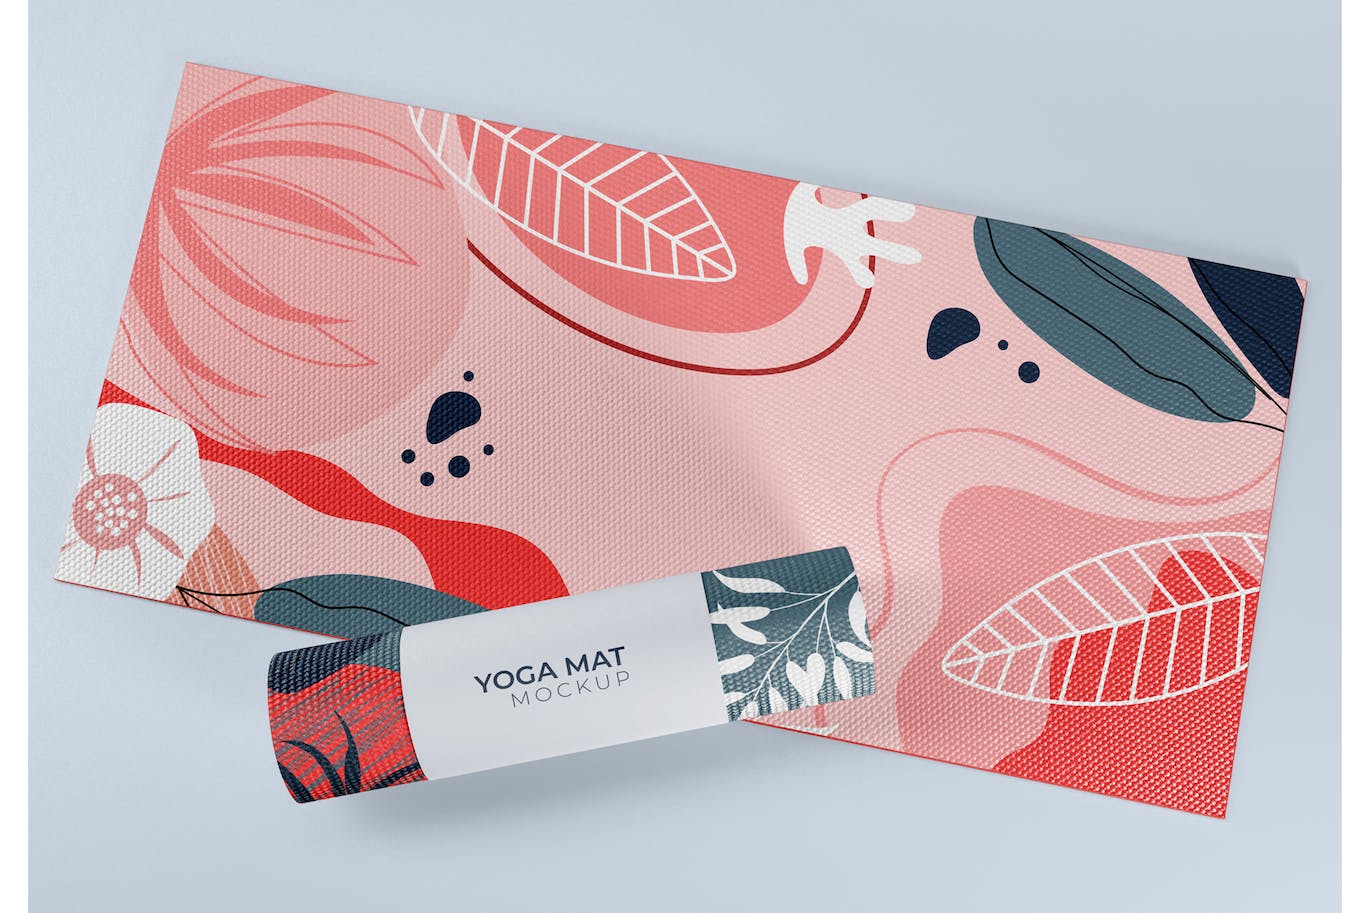 展开和卷状瑜伽垫品牌图案设计样机 Open and Rolled Yoga Mats Mockup 样机素材 第1张